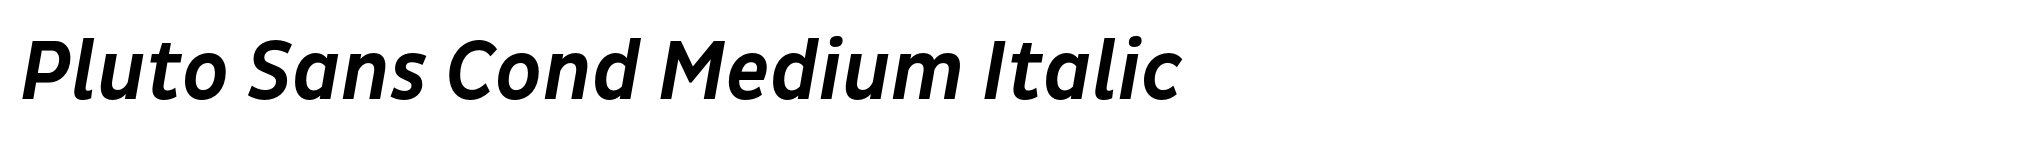 Pluto Sans Cond Medium Italic image